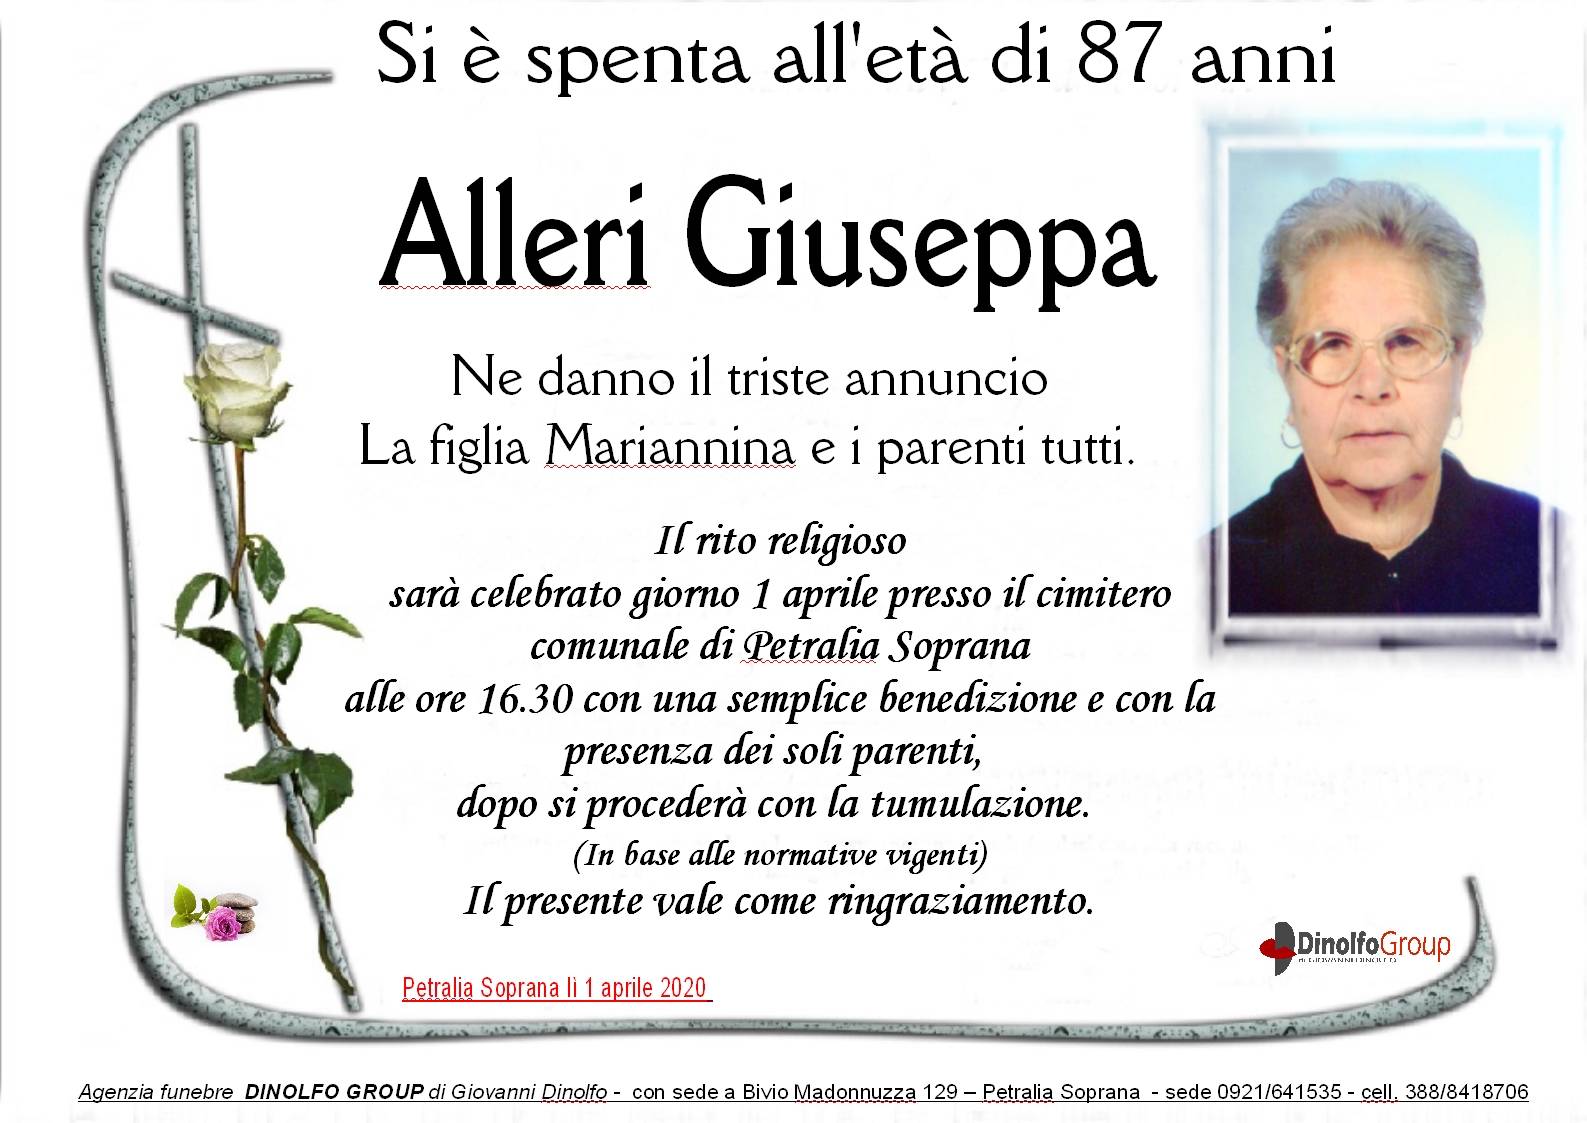 Giuseppa Alleri